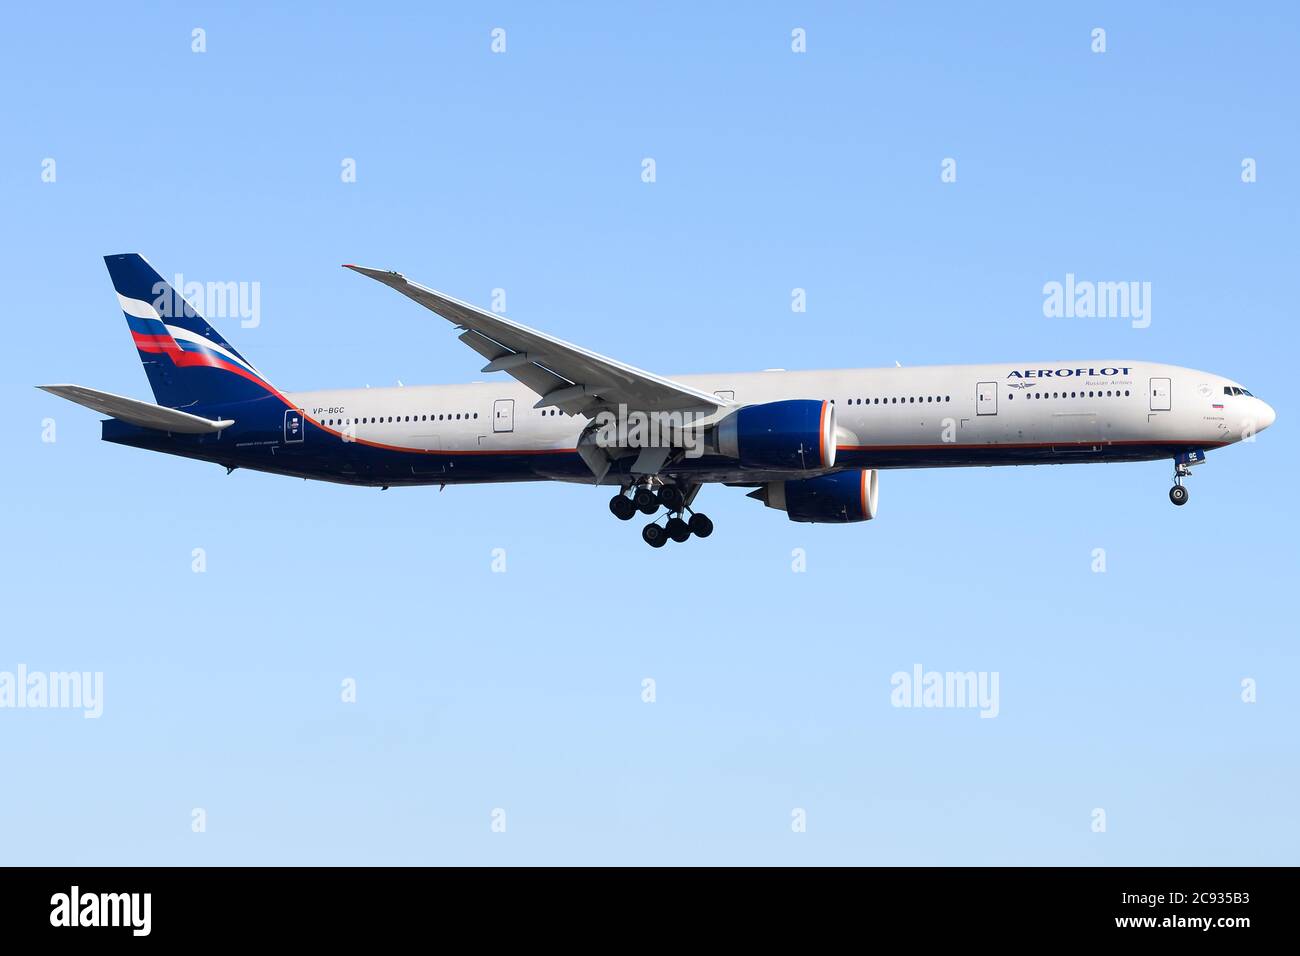 Aeroflot Russian Airlines Flugzeug Boeing 777 vor blauem Himmel auf dem letzten Anflug zum LAX Flughafen in CA, USA. Flugzeug 77W als VP-BGC registriert. Stockfoto